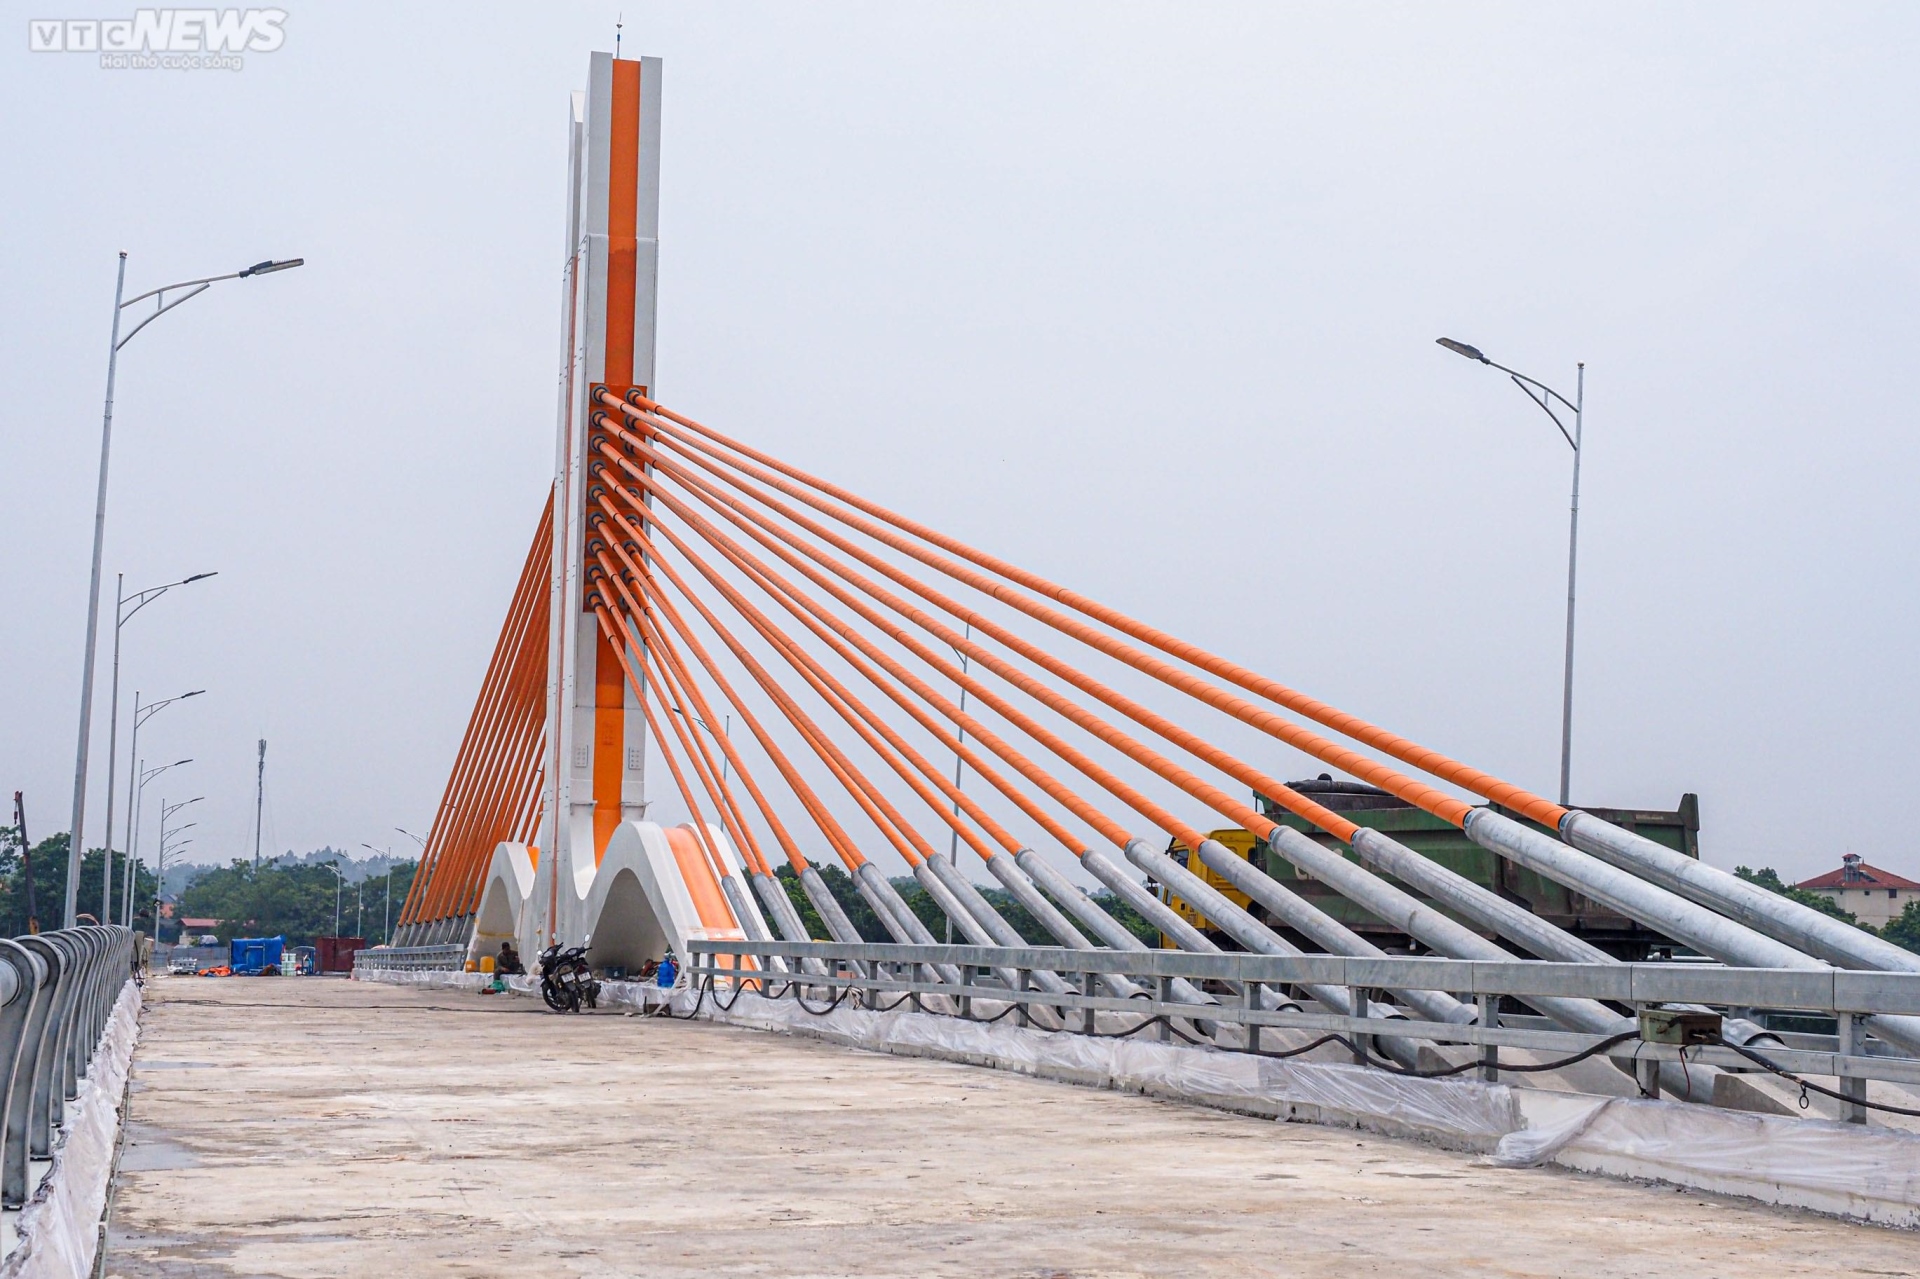 Chiêm ngưỡng cây cầu 540 tỷ đồng nối 2 tỉnh Vĩnh Phúc và Phú Thọ - Ảnh 12.